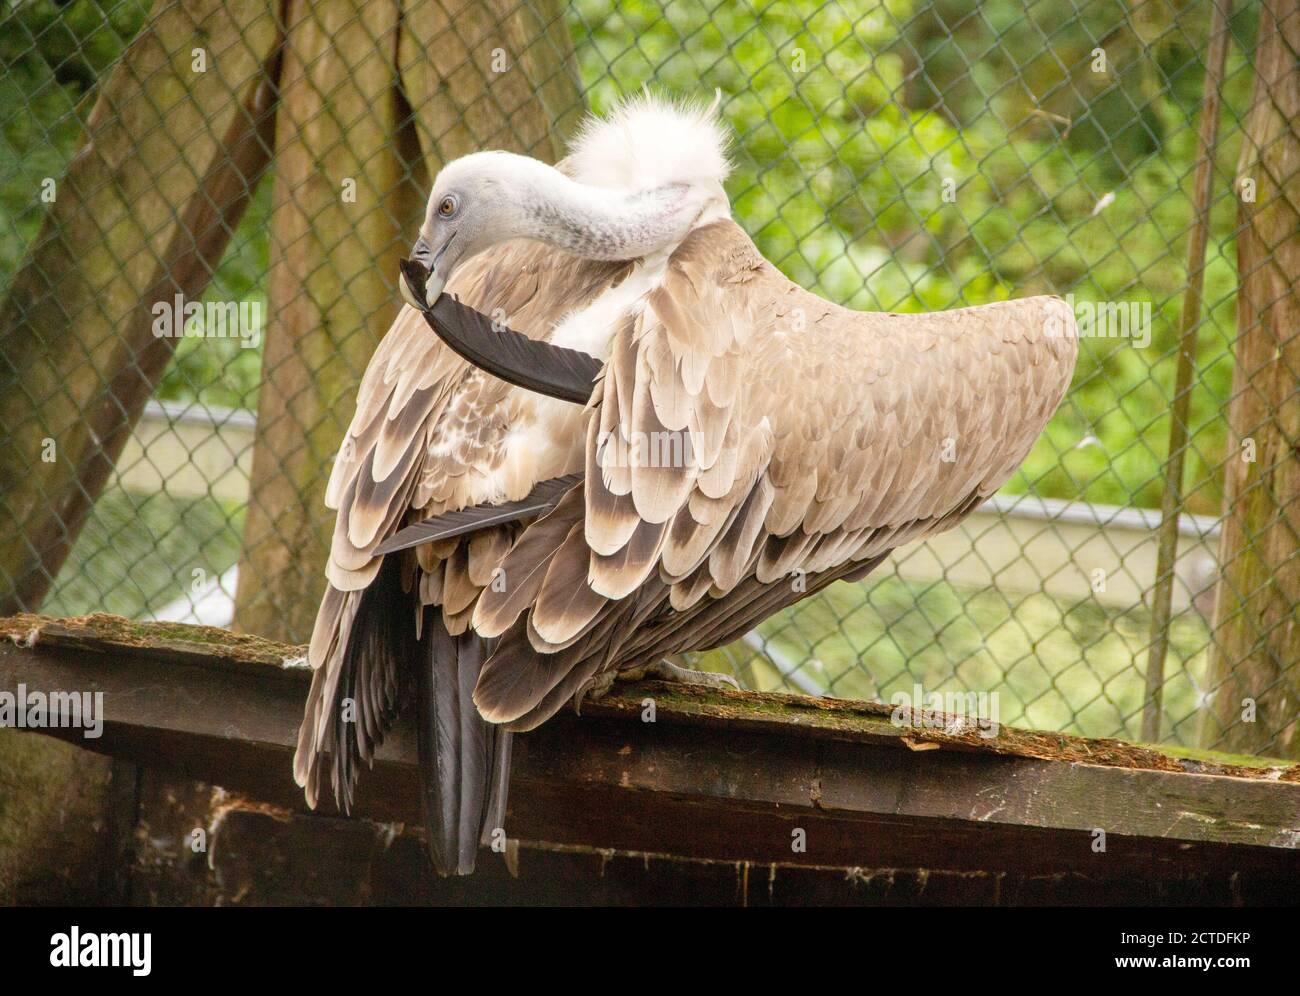 Cape Vulture o Capo grifone, conosciuto anche come avvoltoio di Kolbe, è un avvoltoio del Vecchio mondo della famiglia Accipitridae, coprotetheres latino Gyps Foto Stock